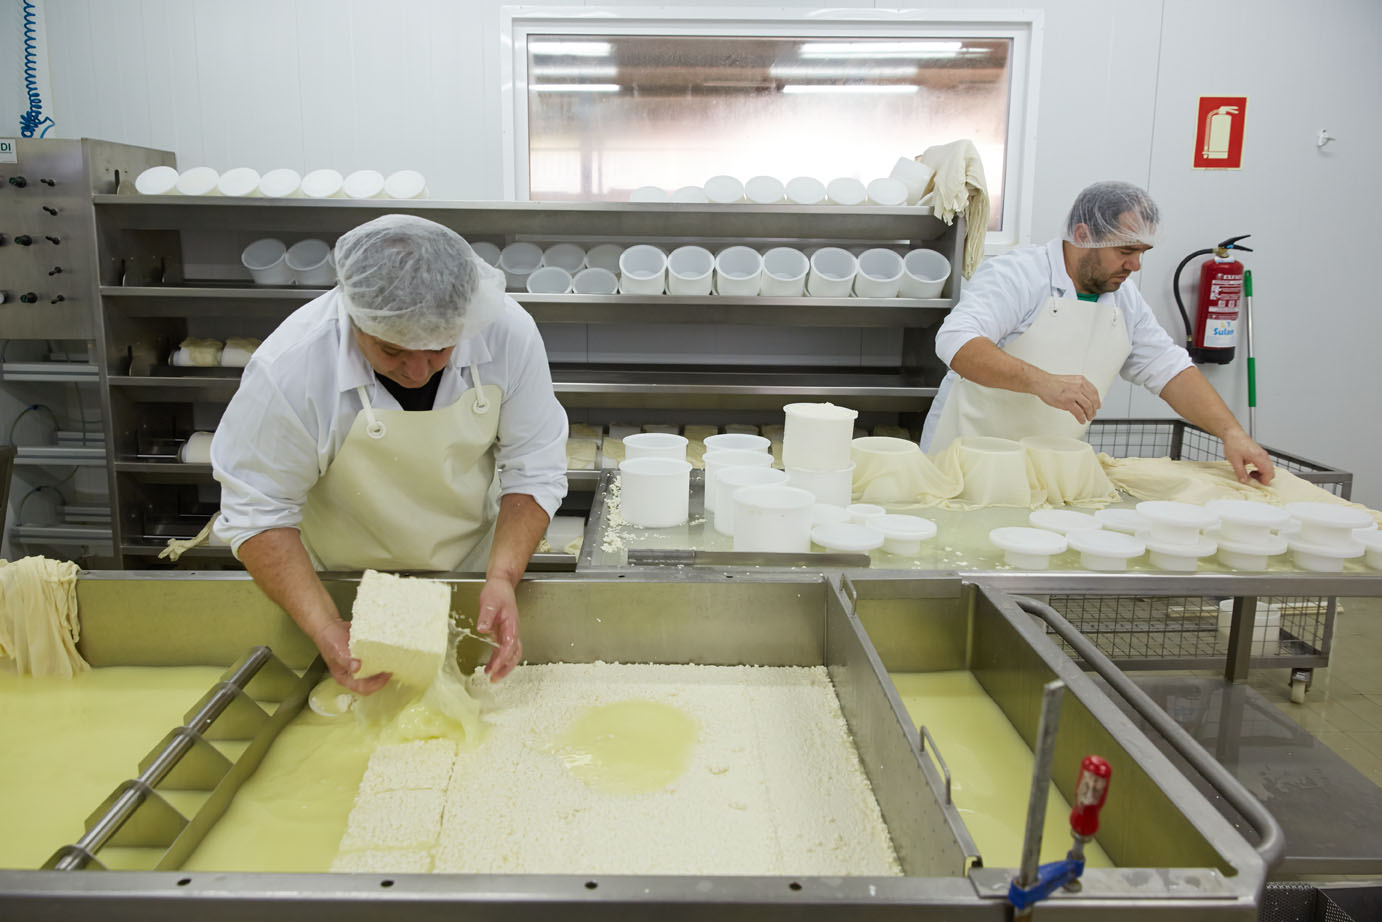 Making cheese from sheeps milk Latxa